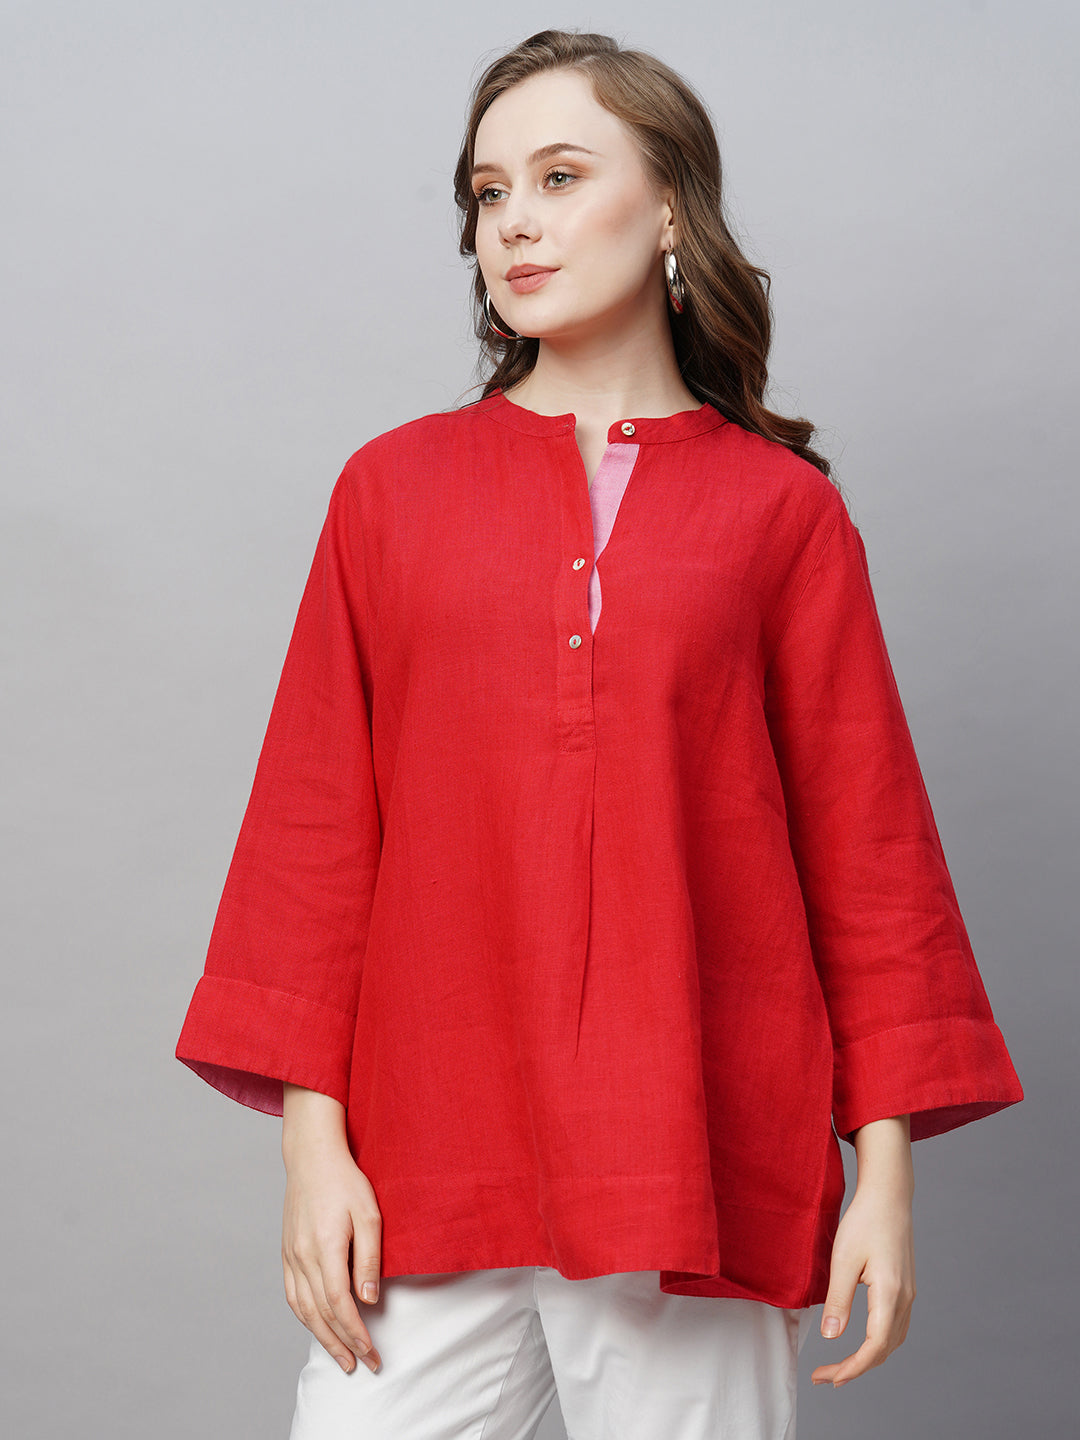 Women's Linen Red Regular Fit Blouse